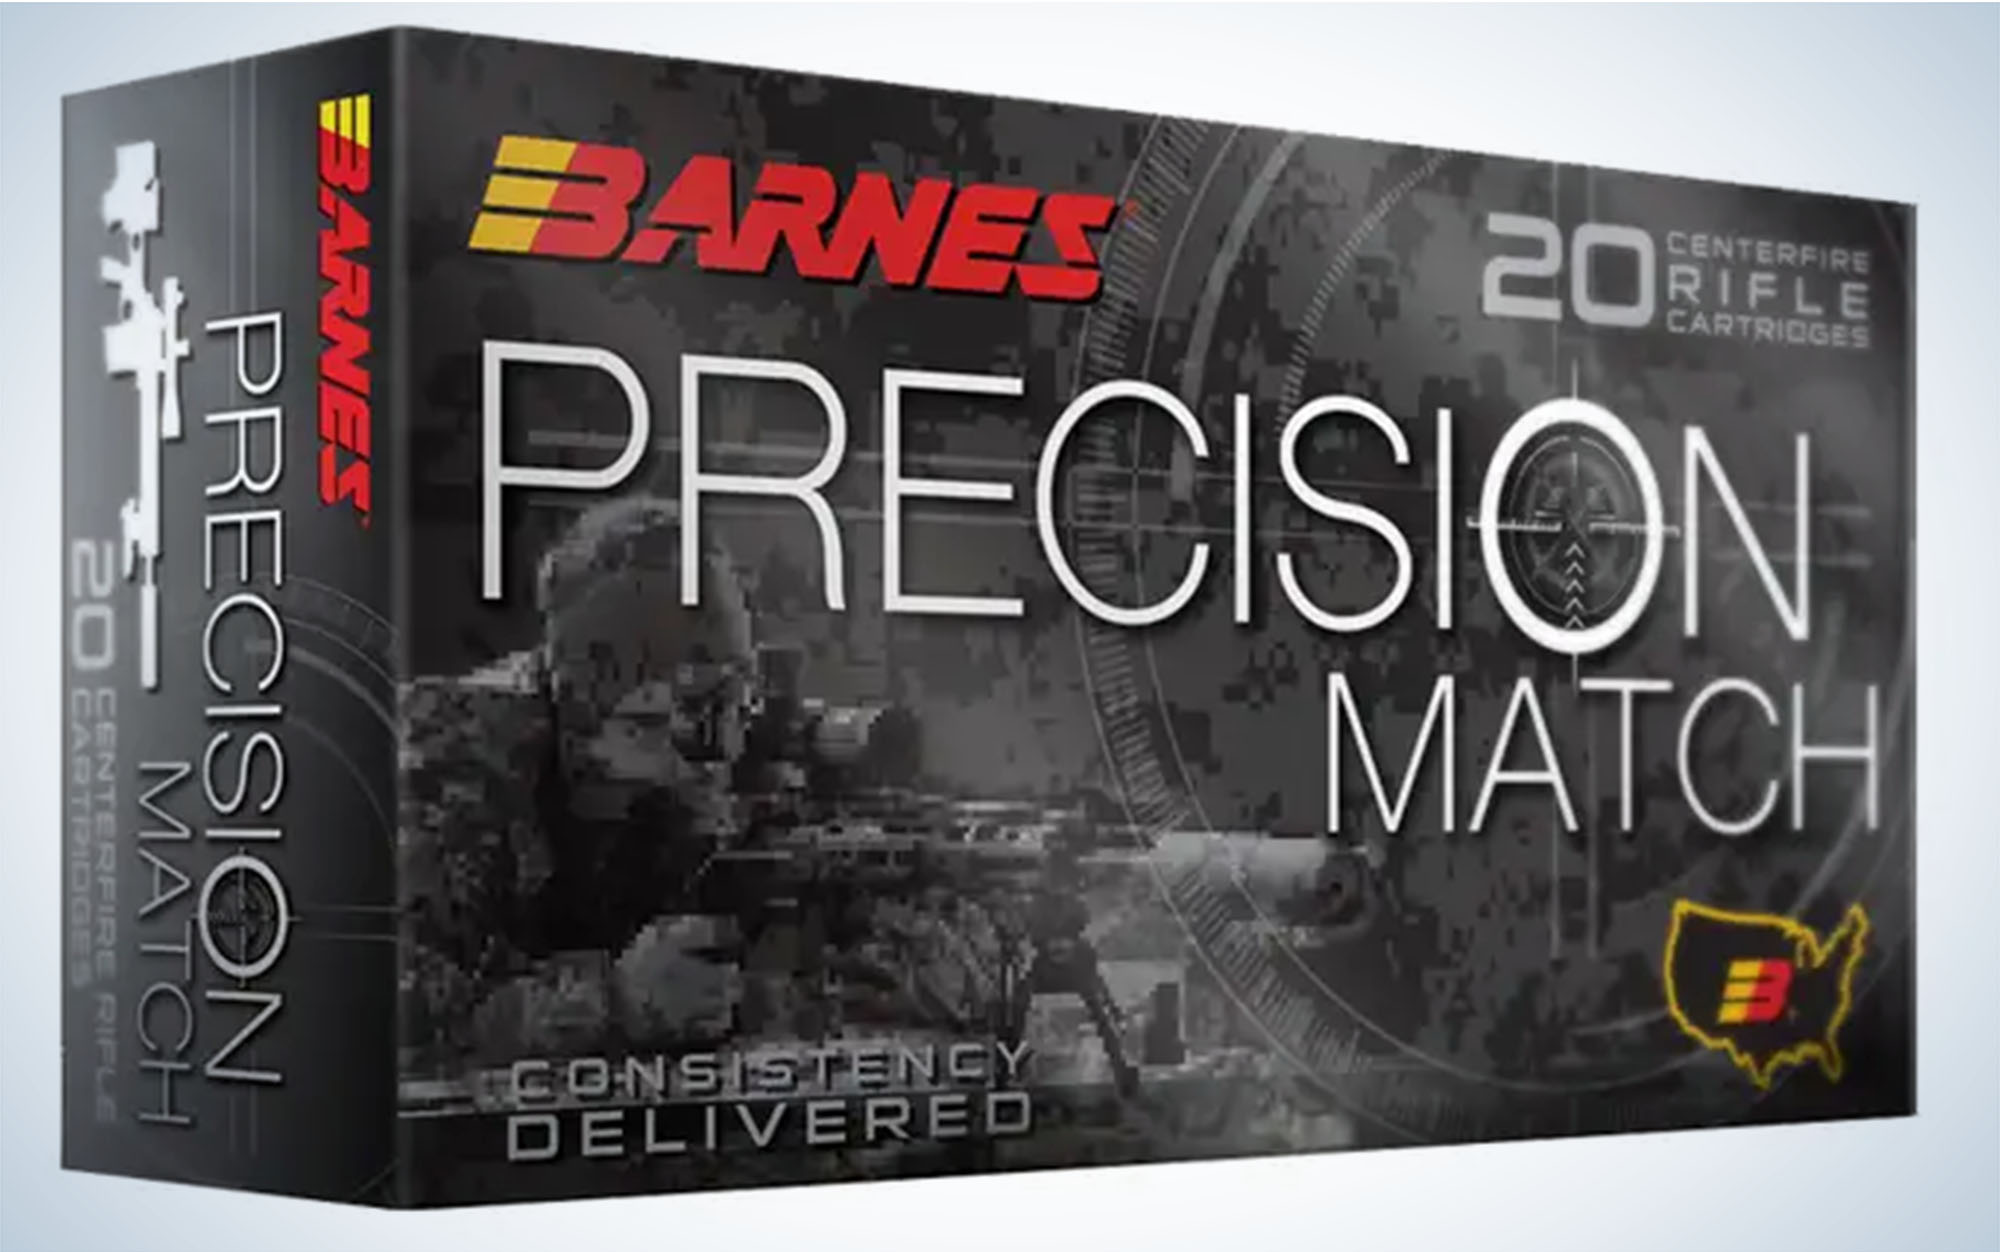 Barnes 220-grain Precision Match